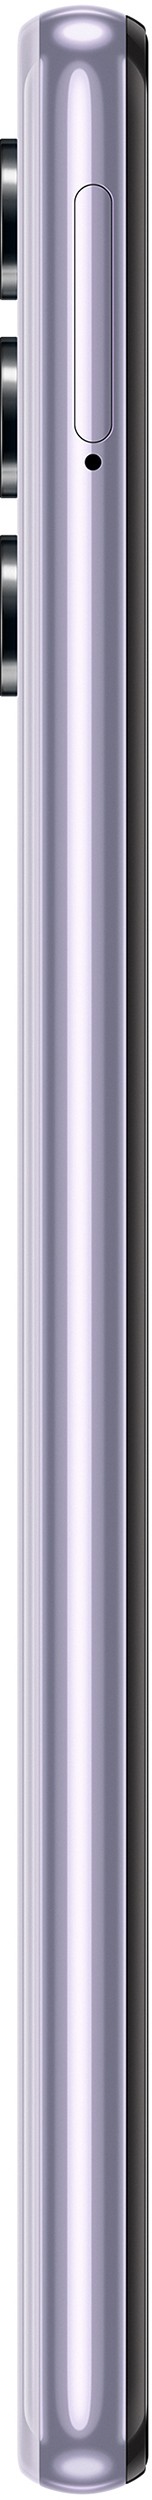 SAMSUNG Smartphone Galaxy A32 128Go Violet